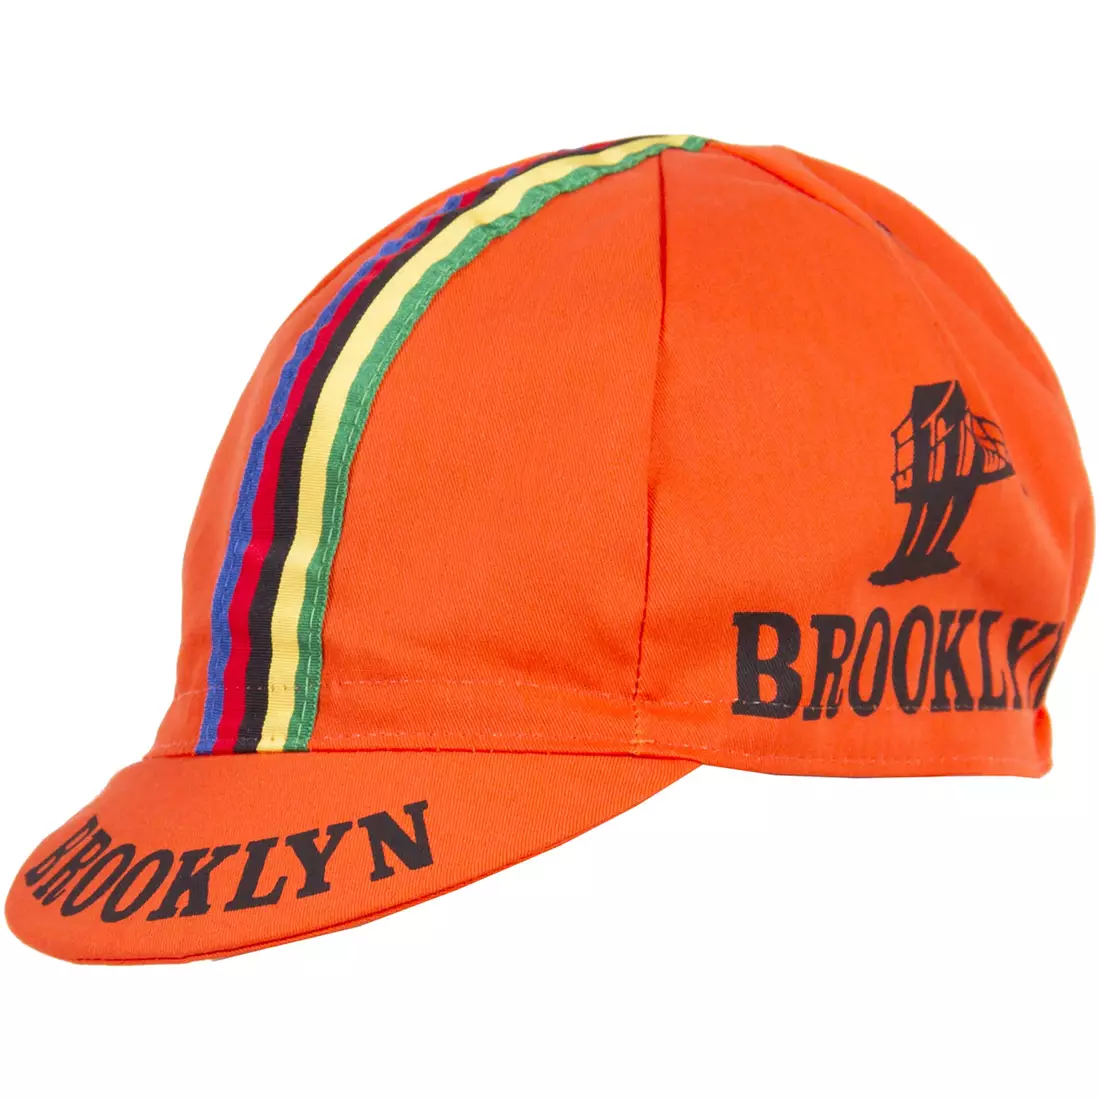 GIORDANA SS18 kerékpáros sapka - Brooklyn - Narancs csíkos szalaggal GI-S6-COCA-BROK-ORAN egy méret